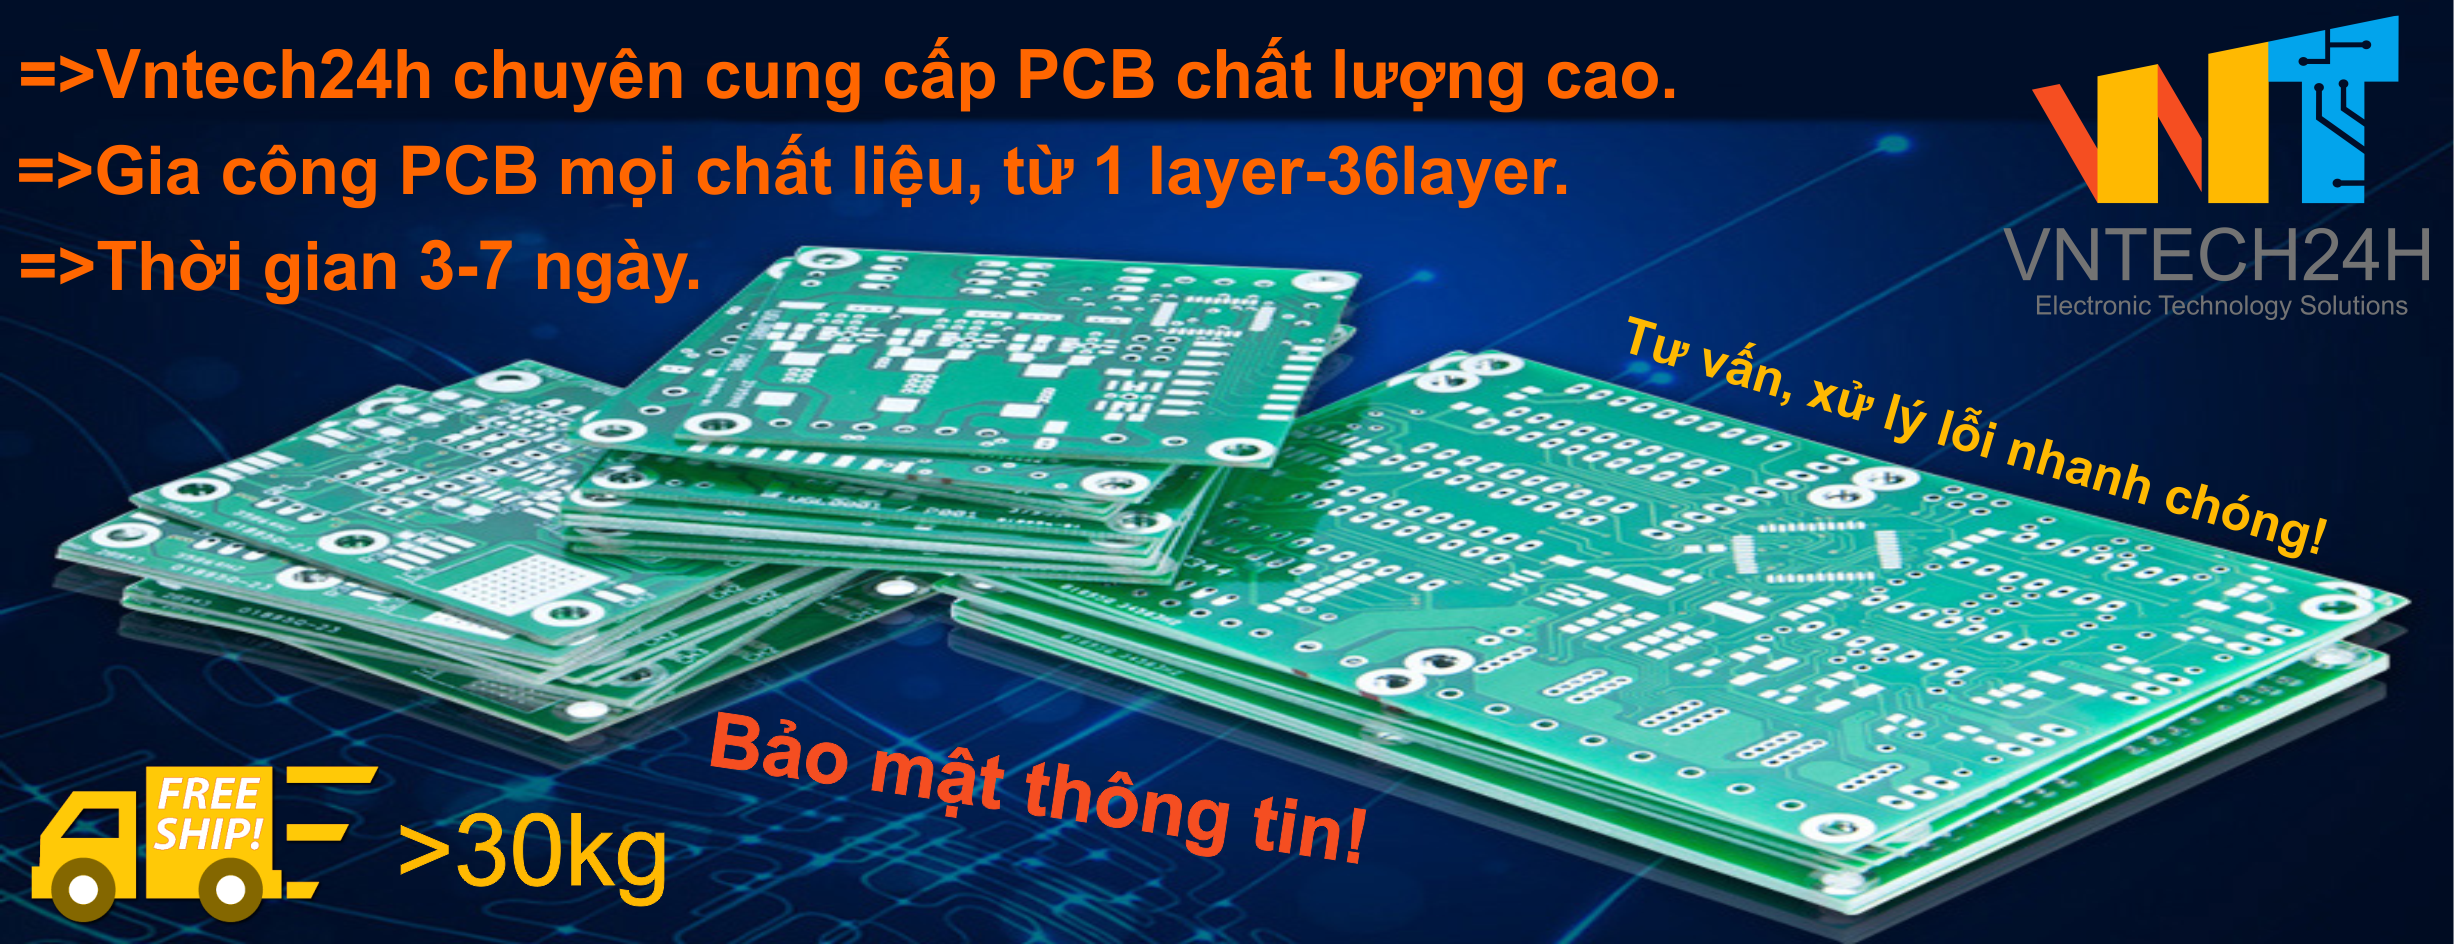 Gia công PCB 1-36Layer